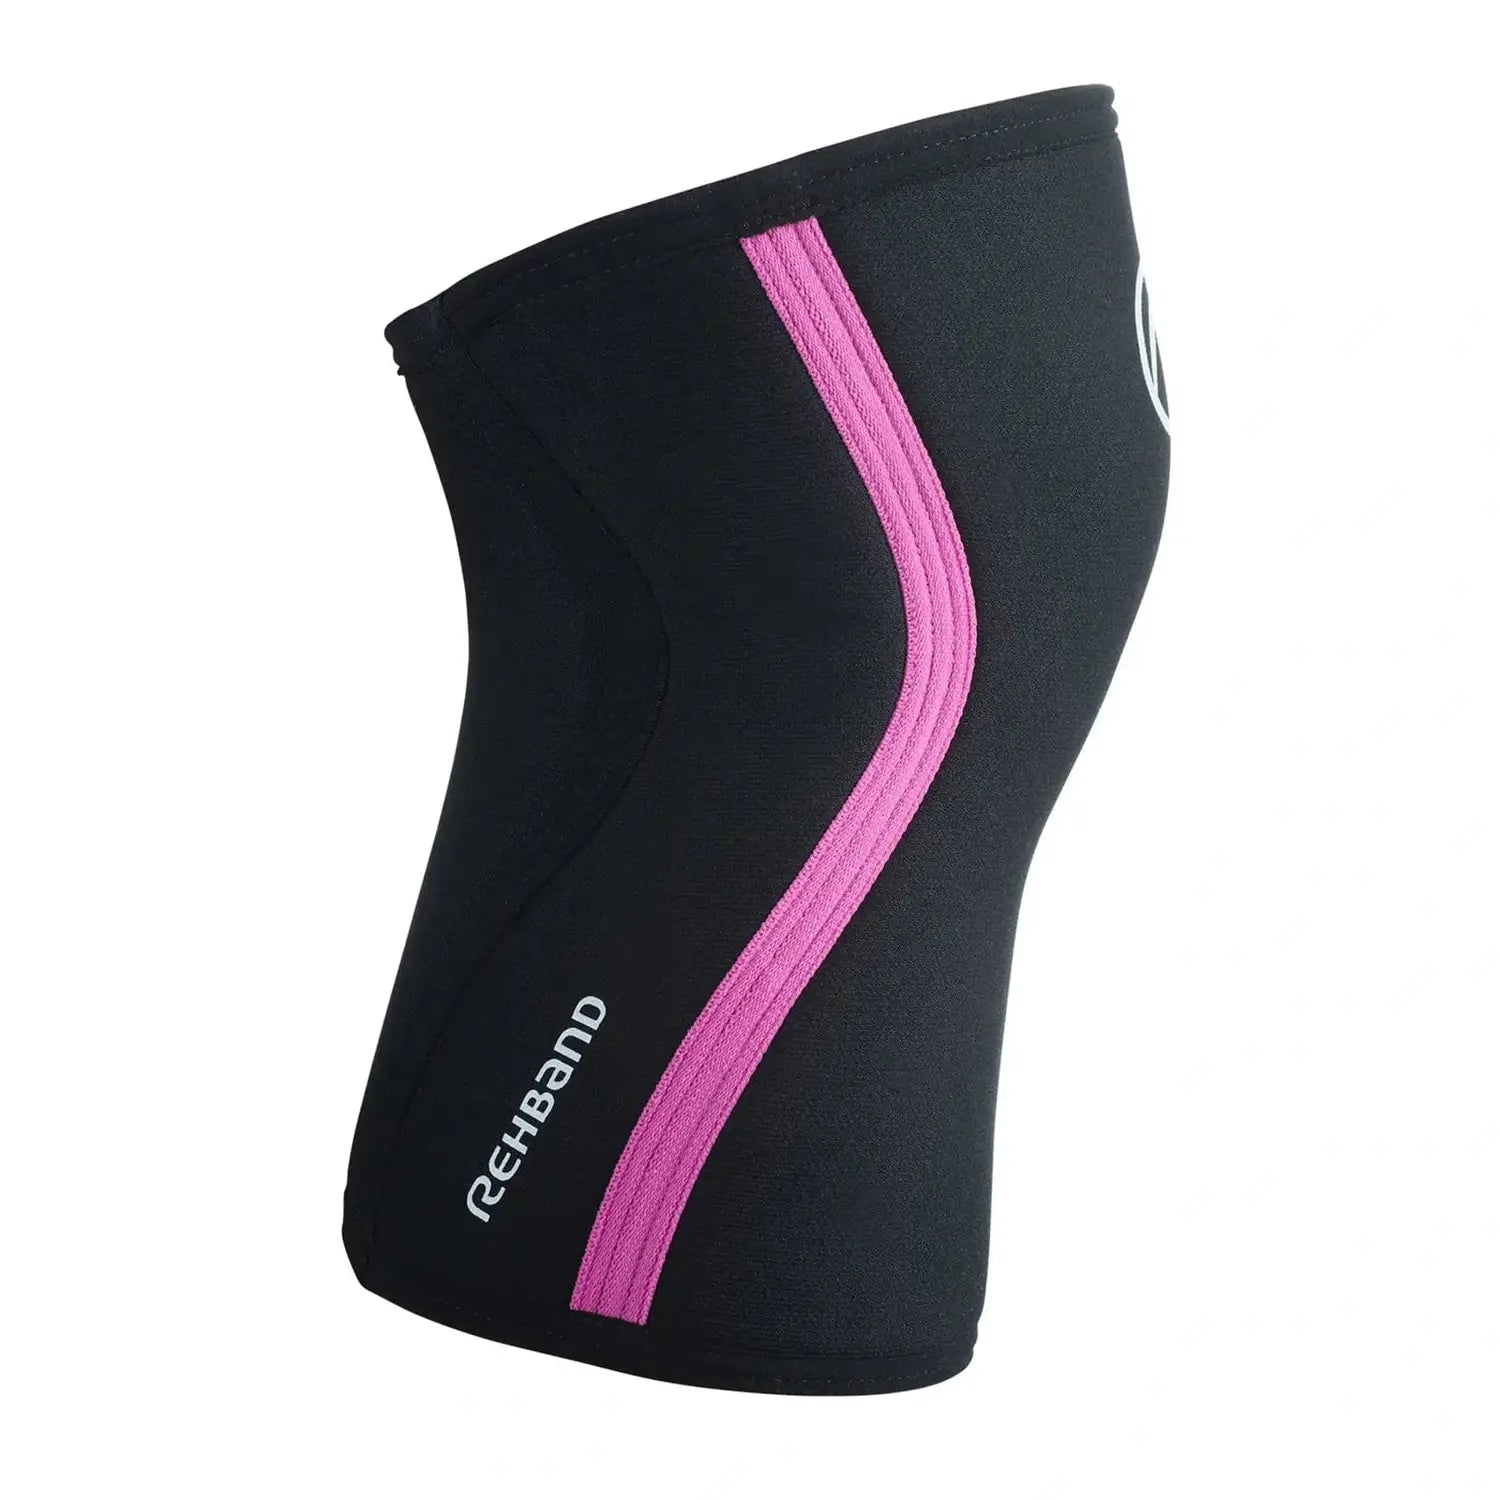 Rehband RX Knee Sleeve 7mm (Kniebandage) Pink-Schwarz kaufen bei HighPowered.ch